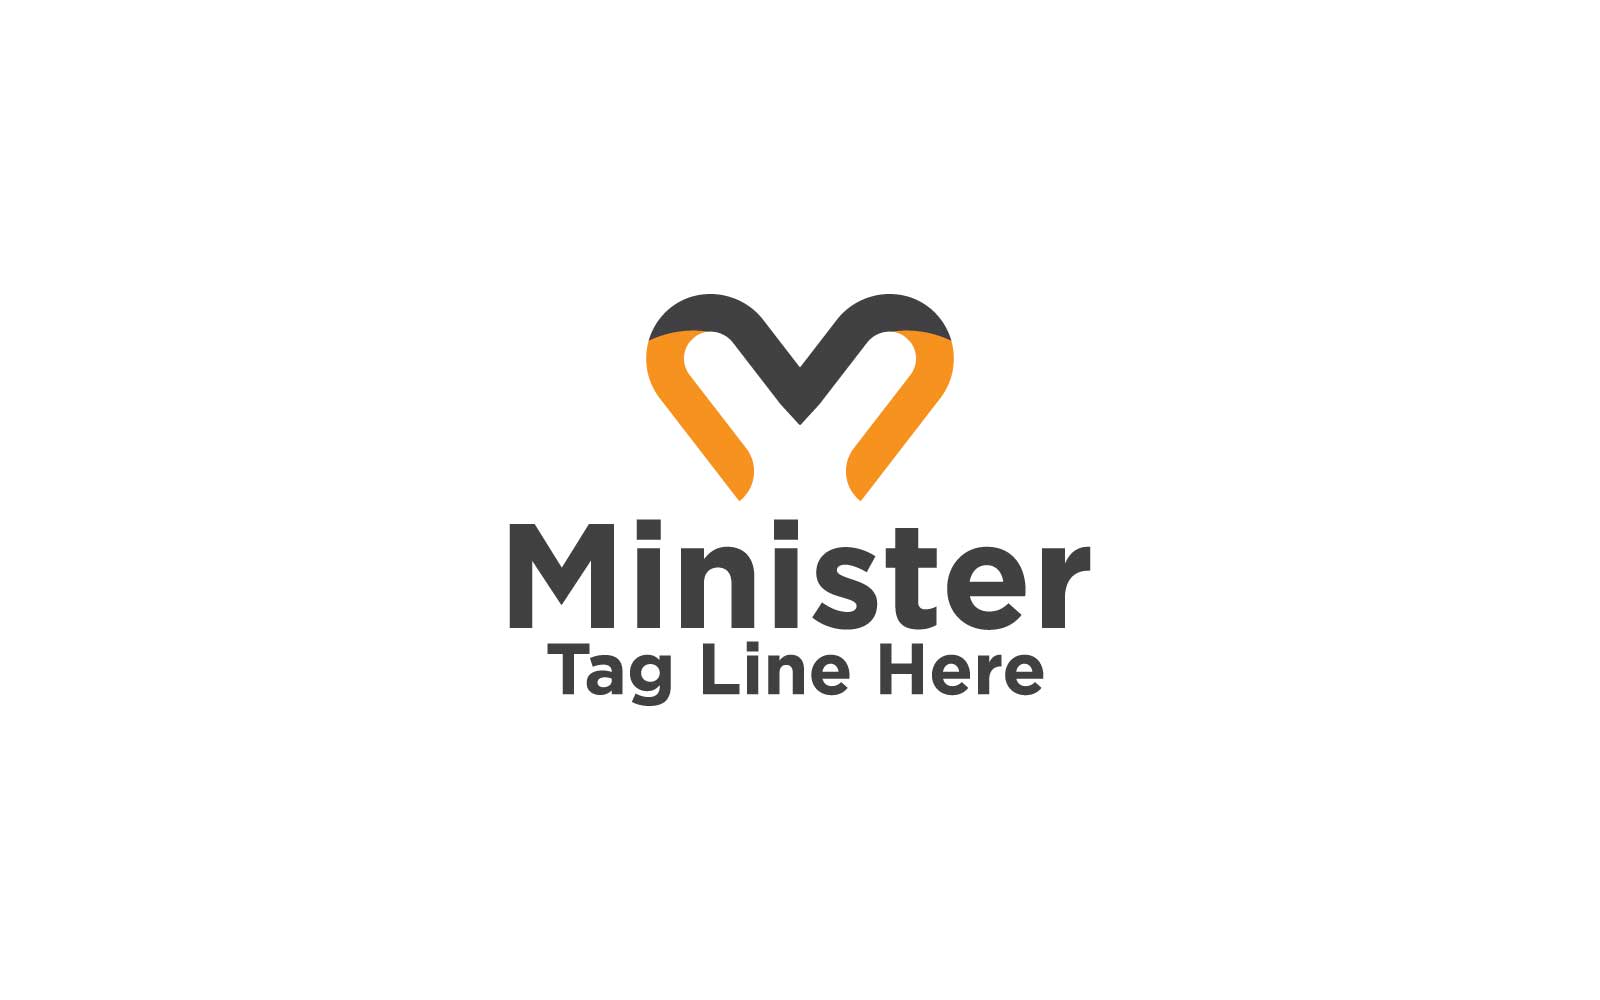 Minister M Letter Logo Design Template